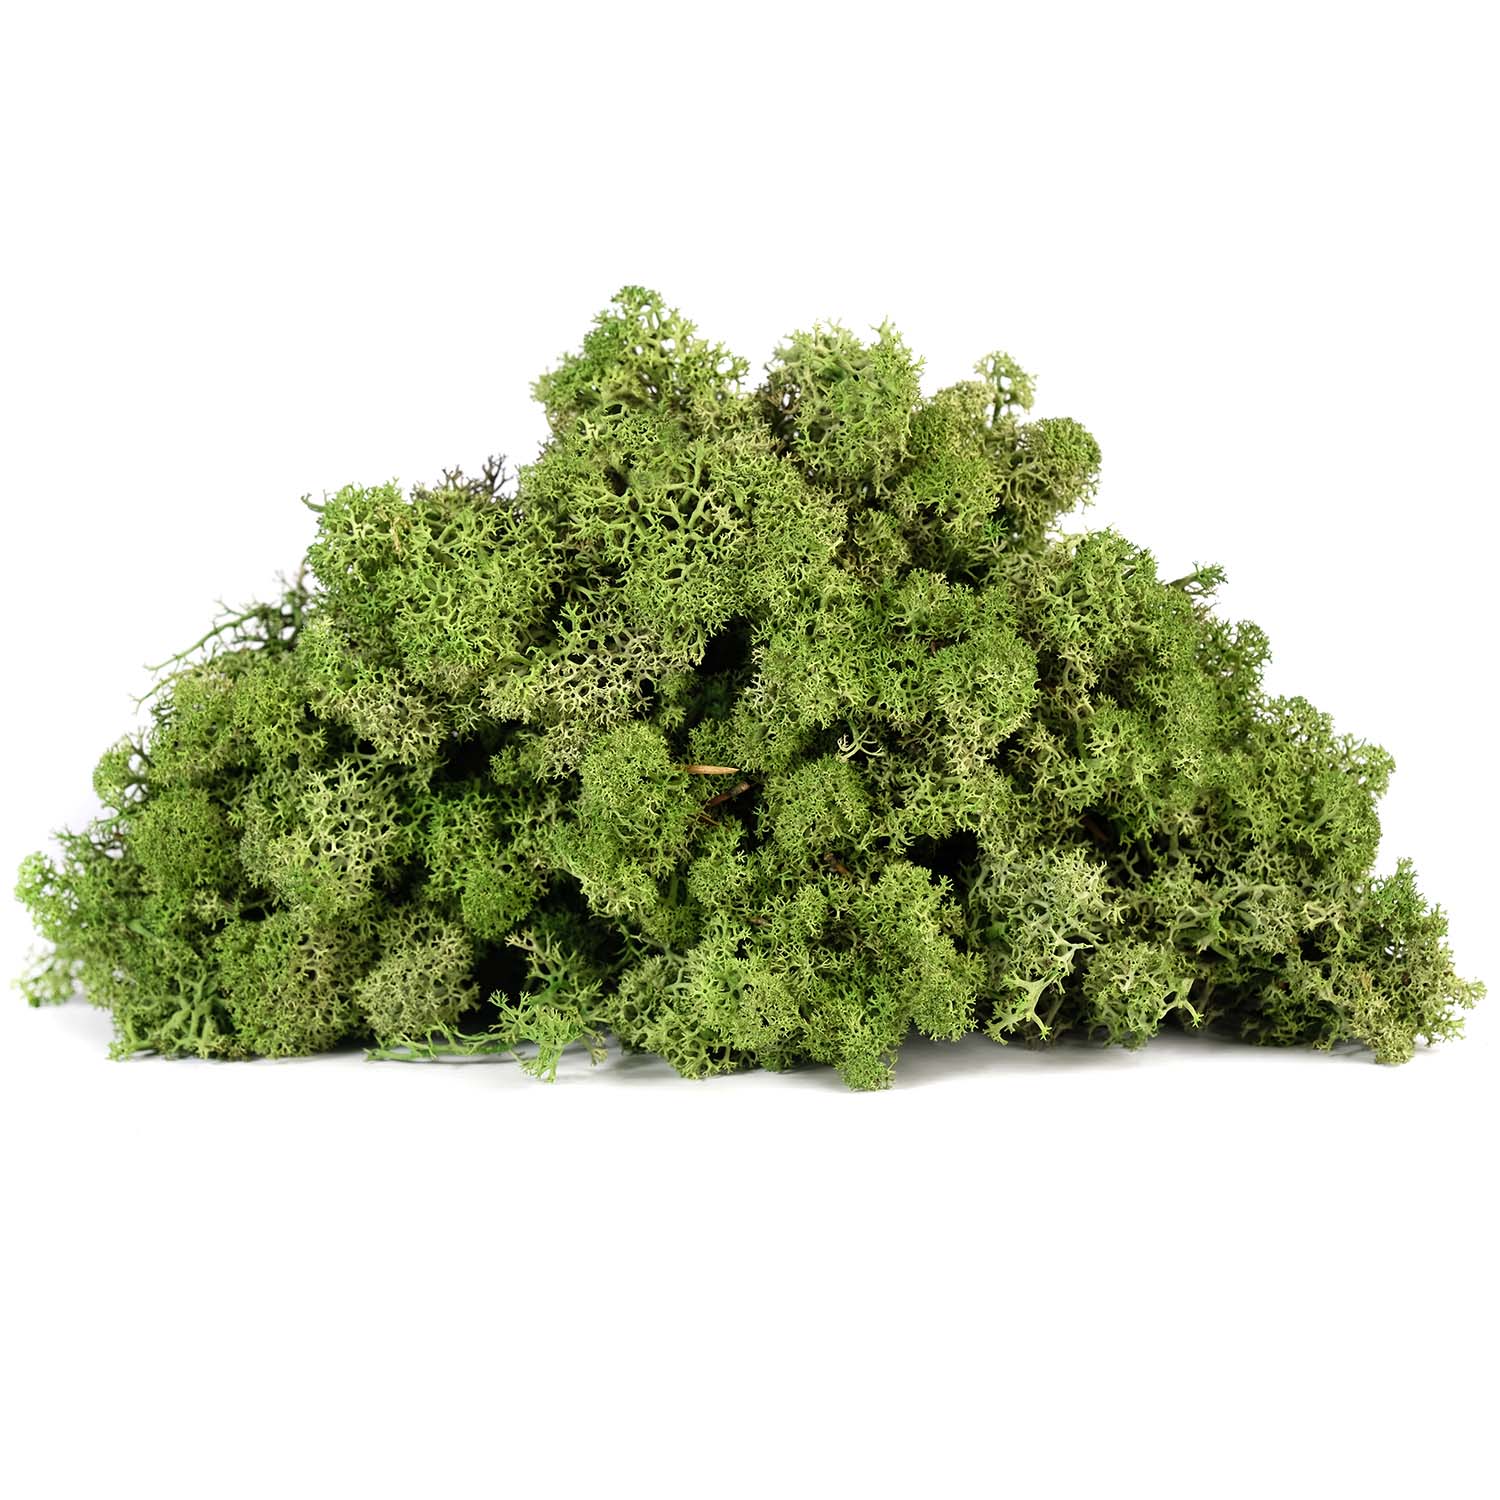 Lir/4070 lichen stabilisée vert olive box 4 kg